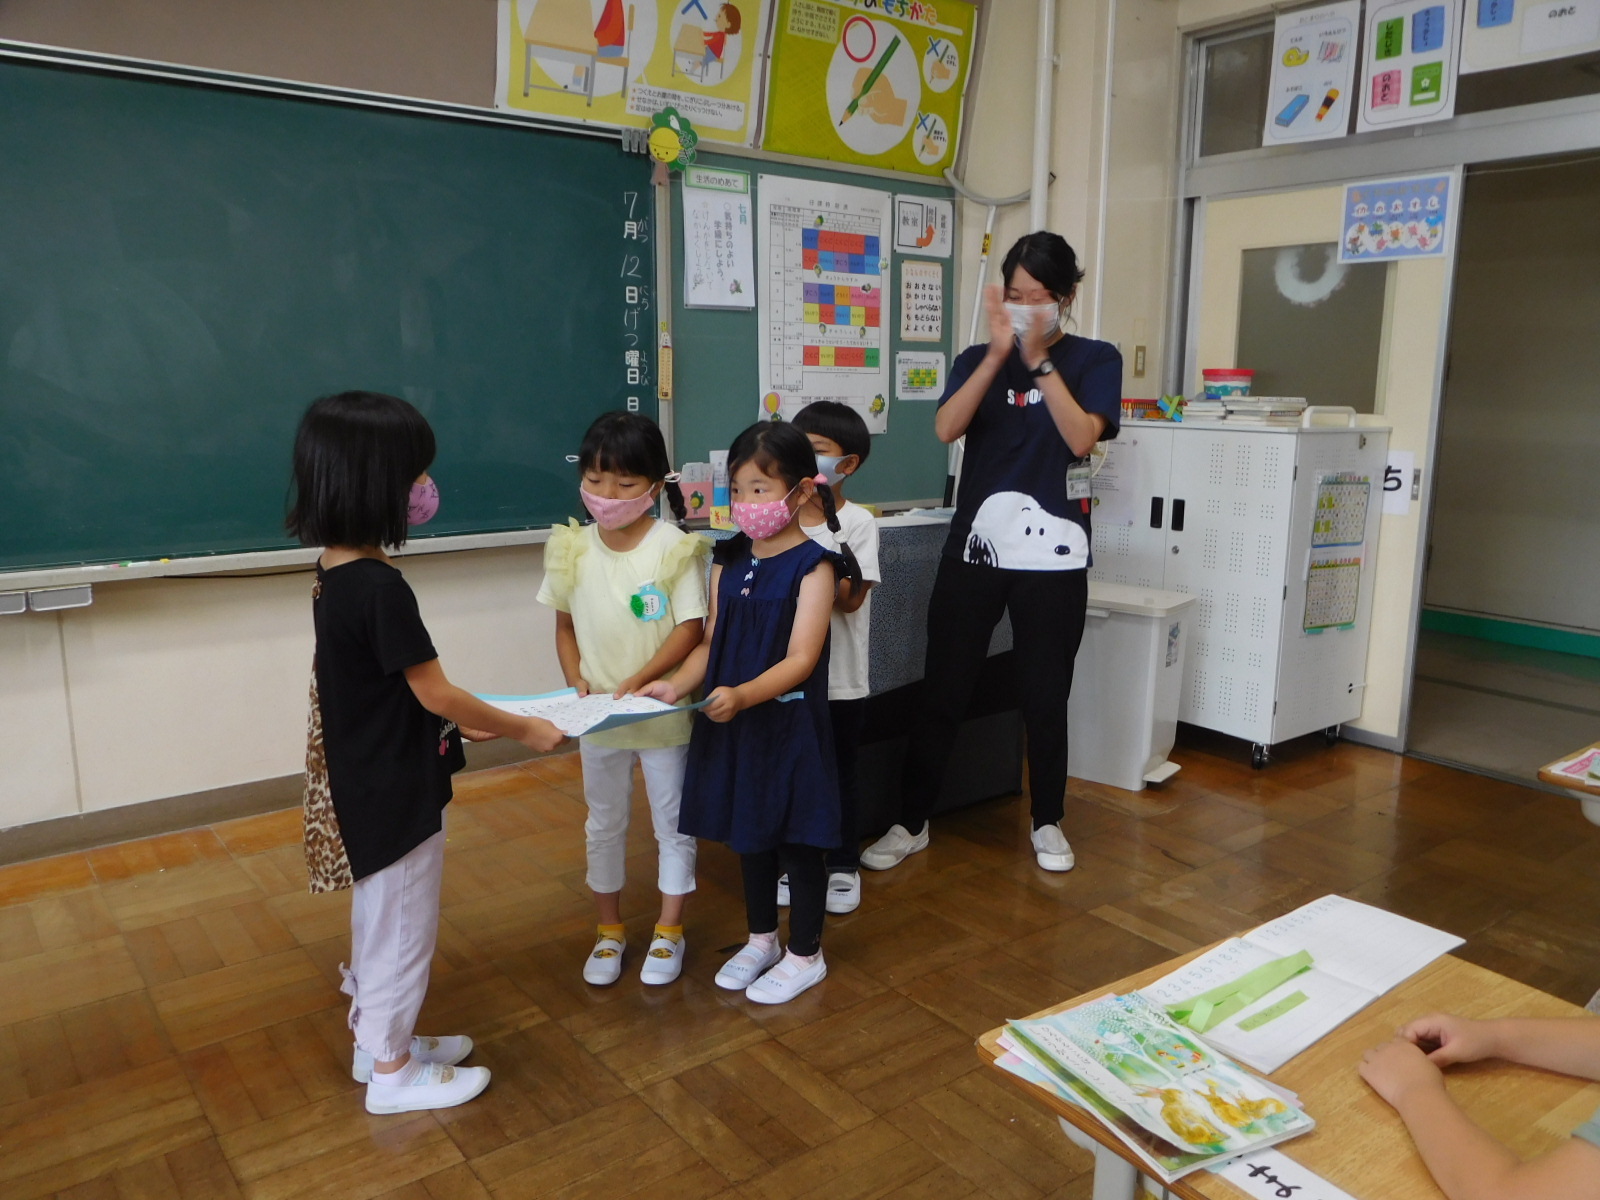 教室で、女児に招待状を手渡ししている園児の写真